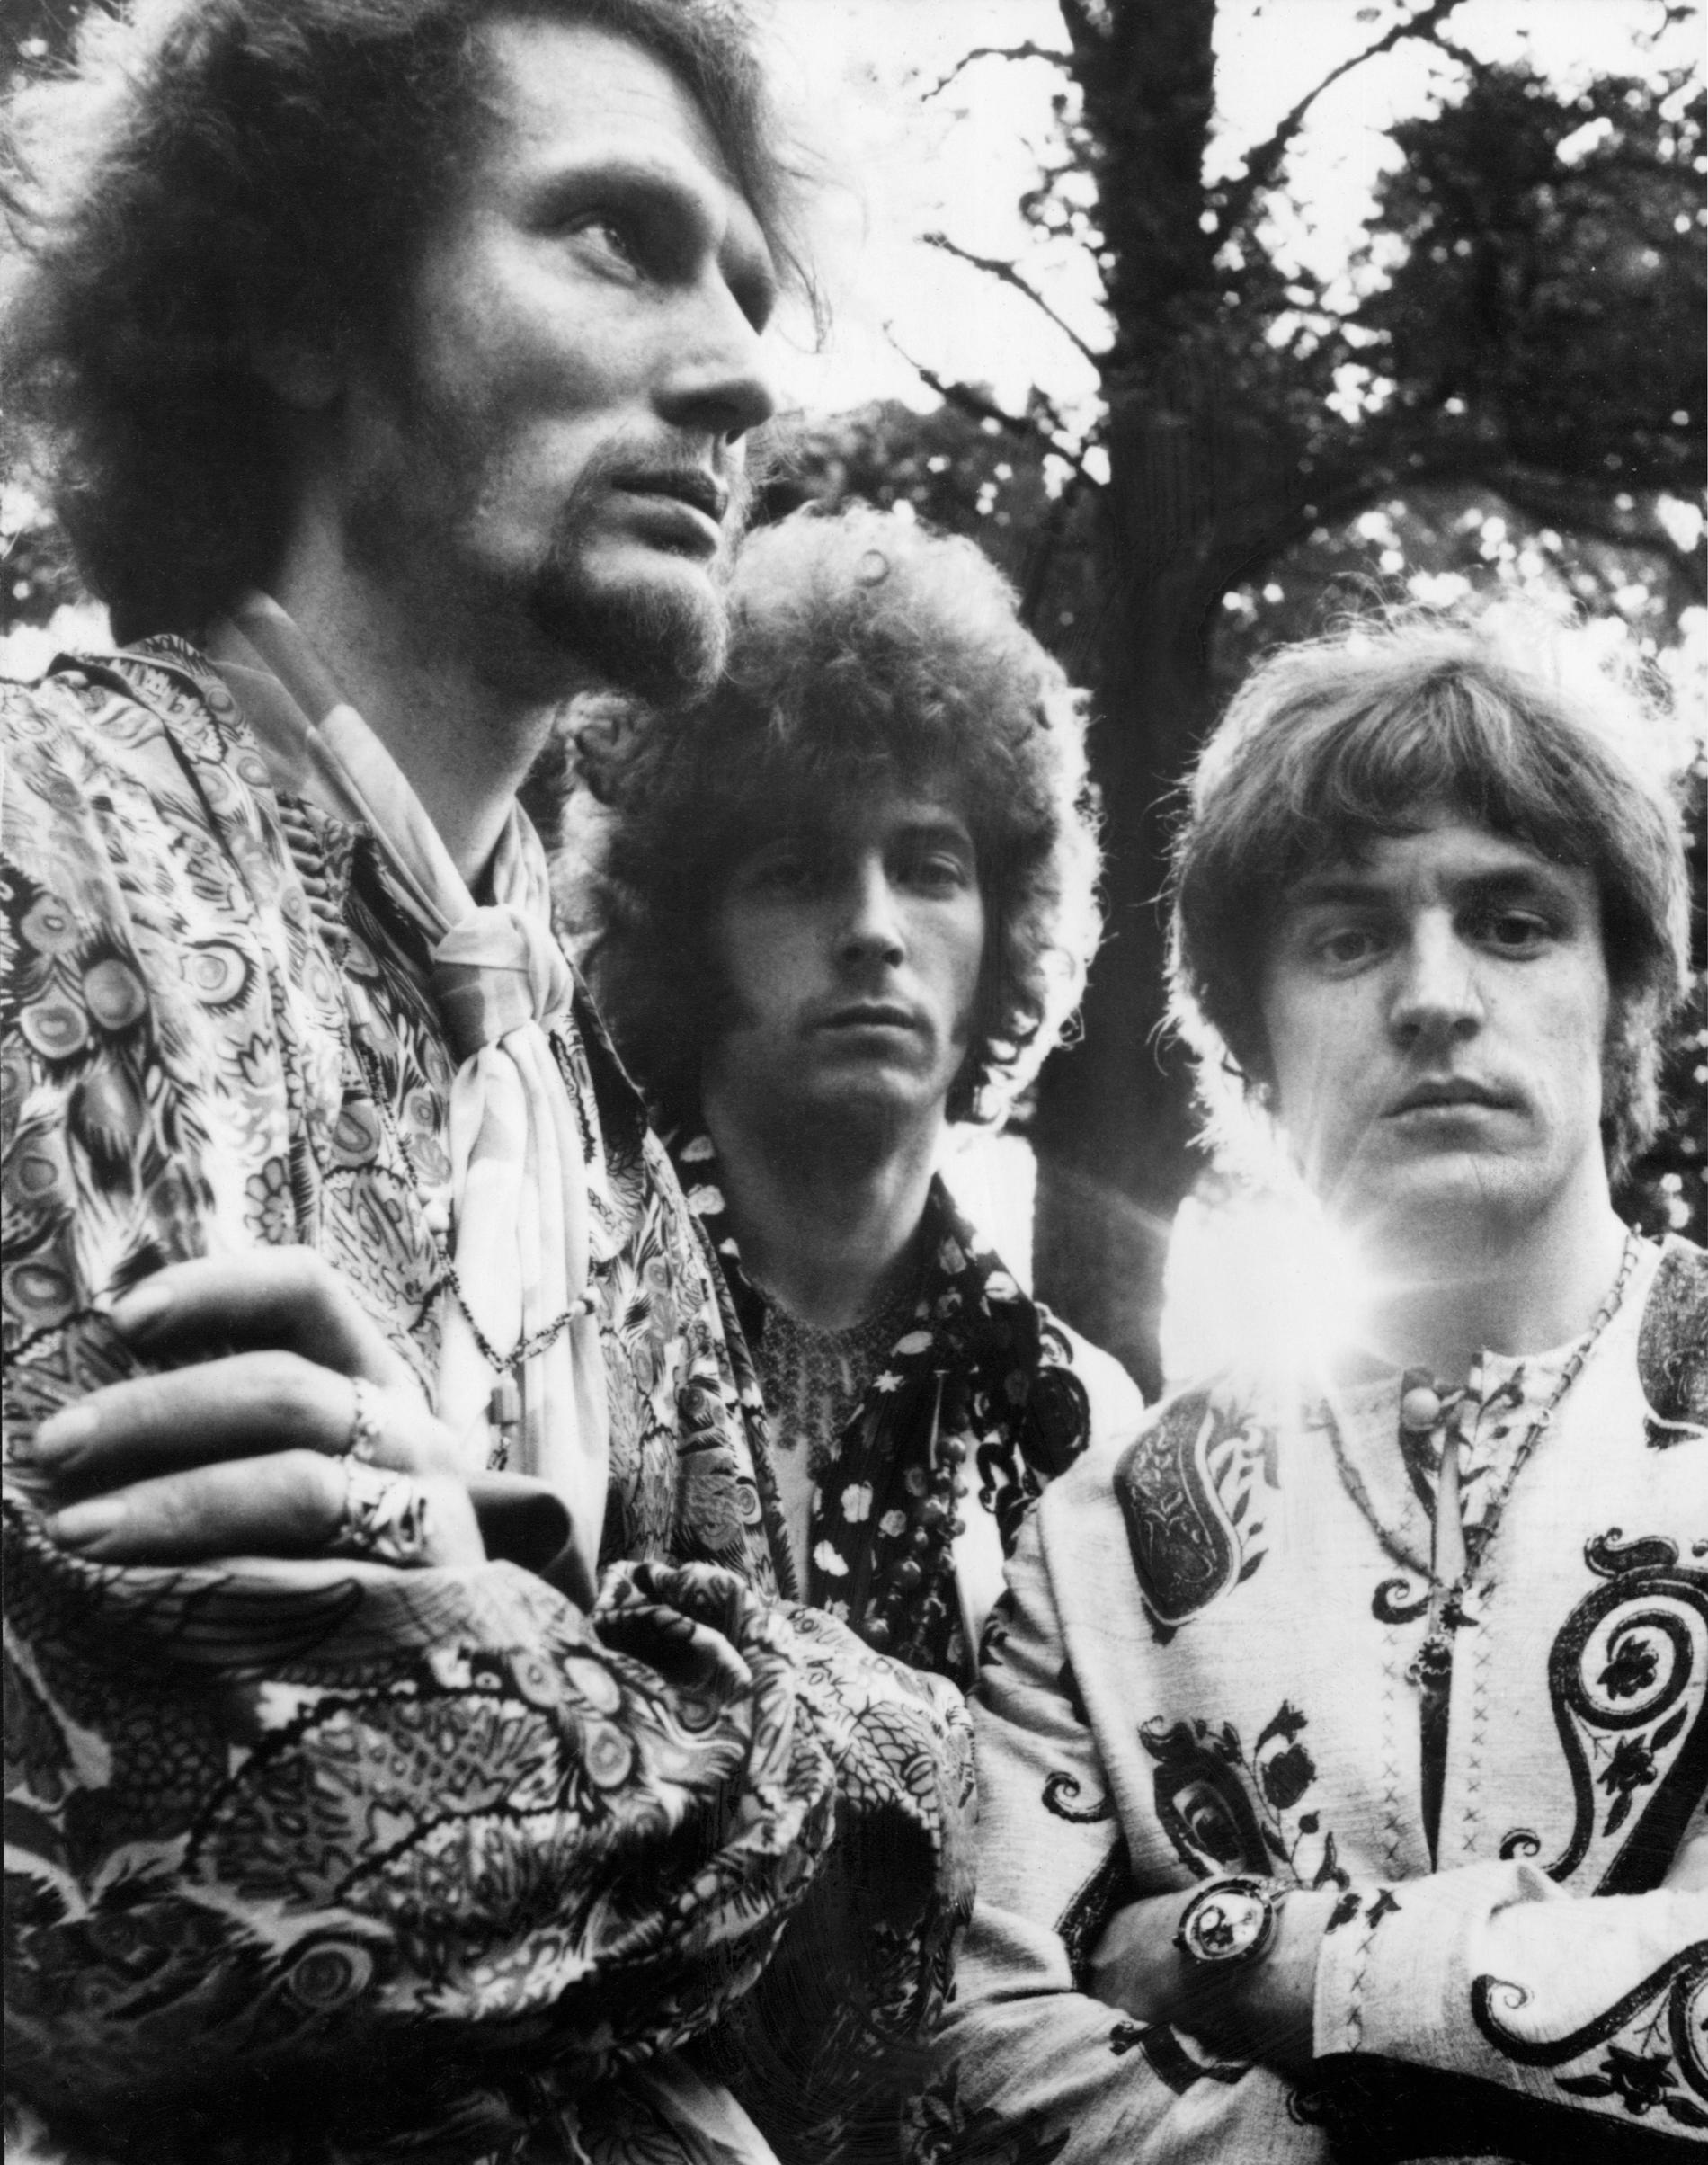 Ginger Baker, Eric Clapton och Jack Bruce, medlemmarna i det legendariska bandet Cream, här på bild från 1967.